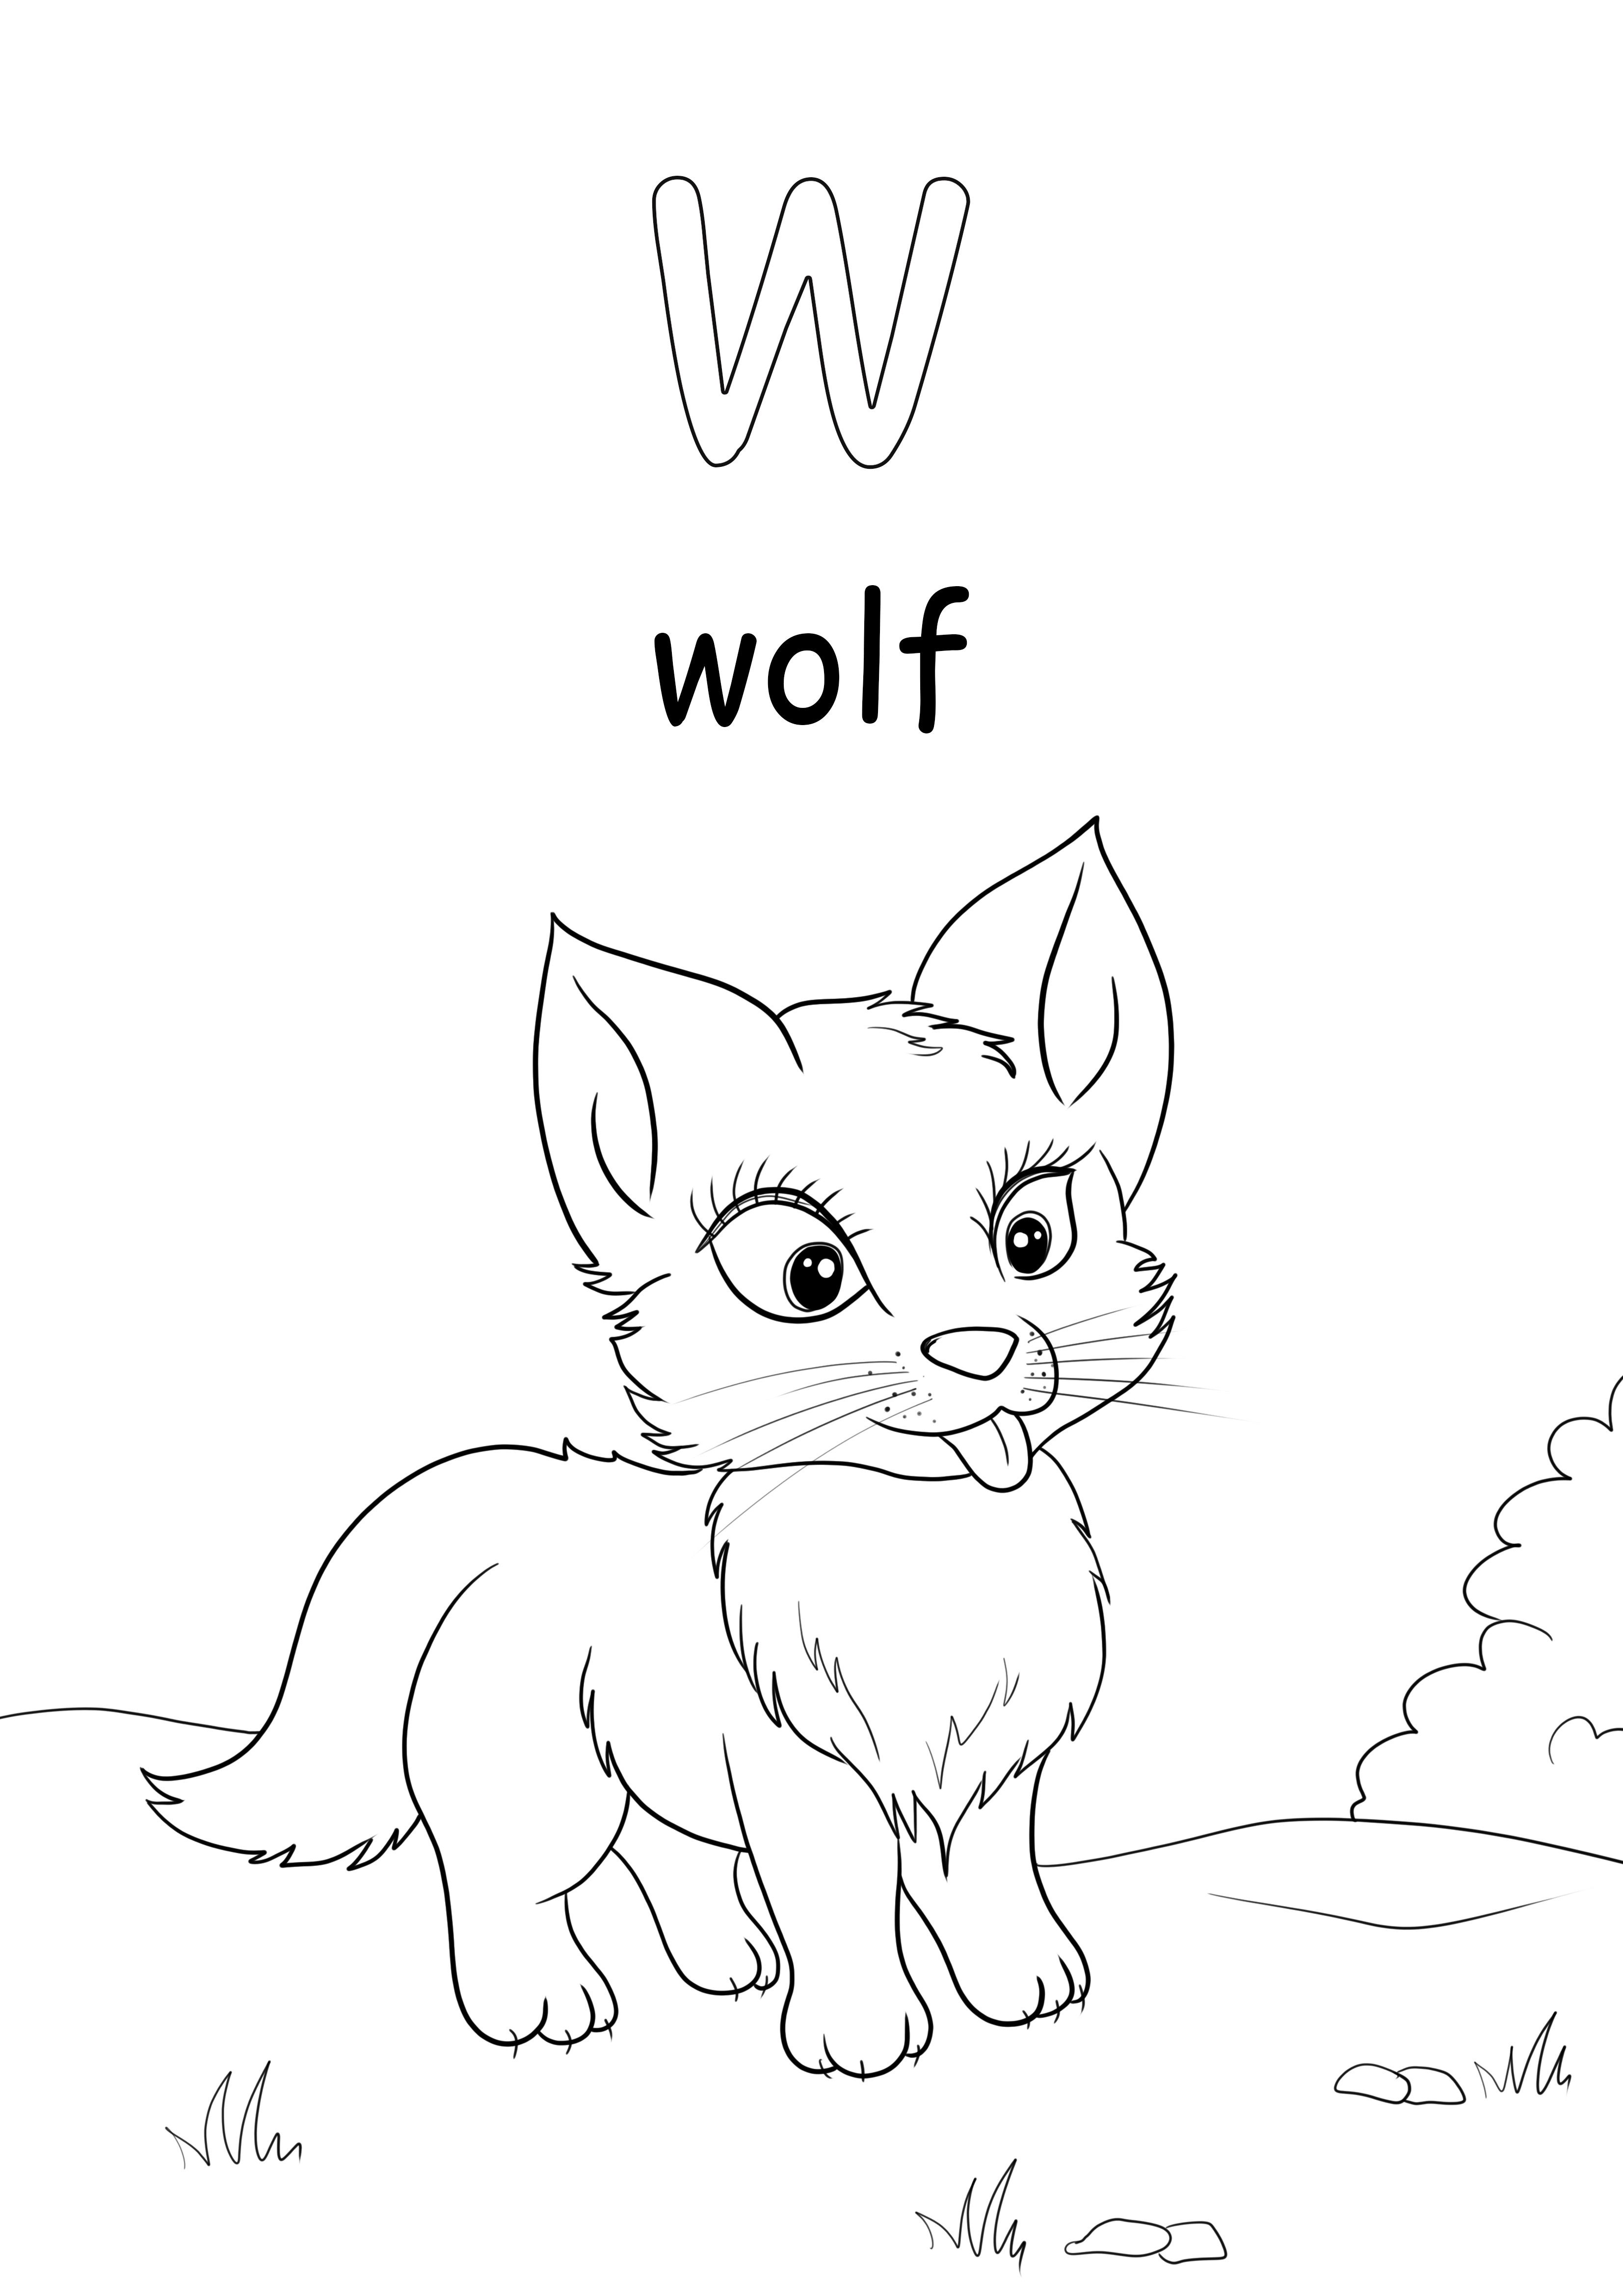 La w minuscola indica la parola lupo da scaricare e stampare gratuitamente